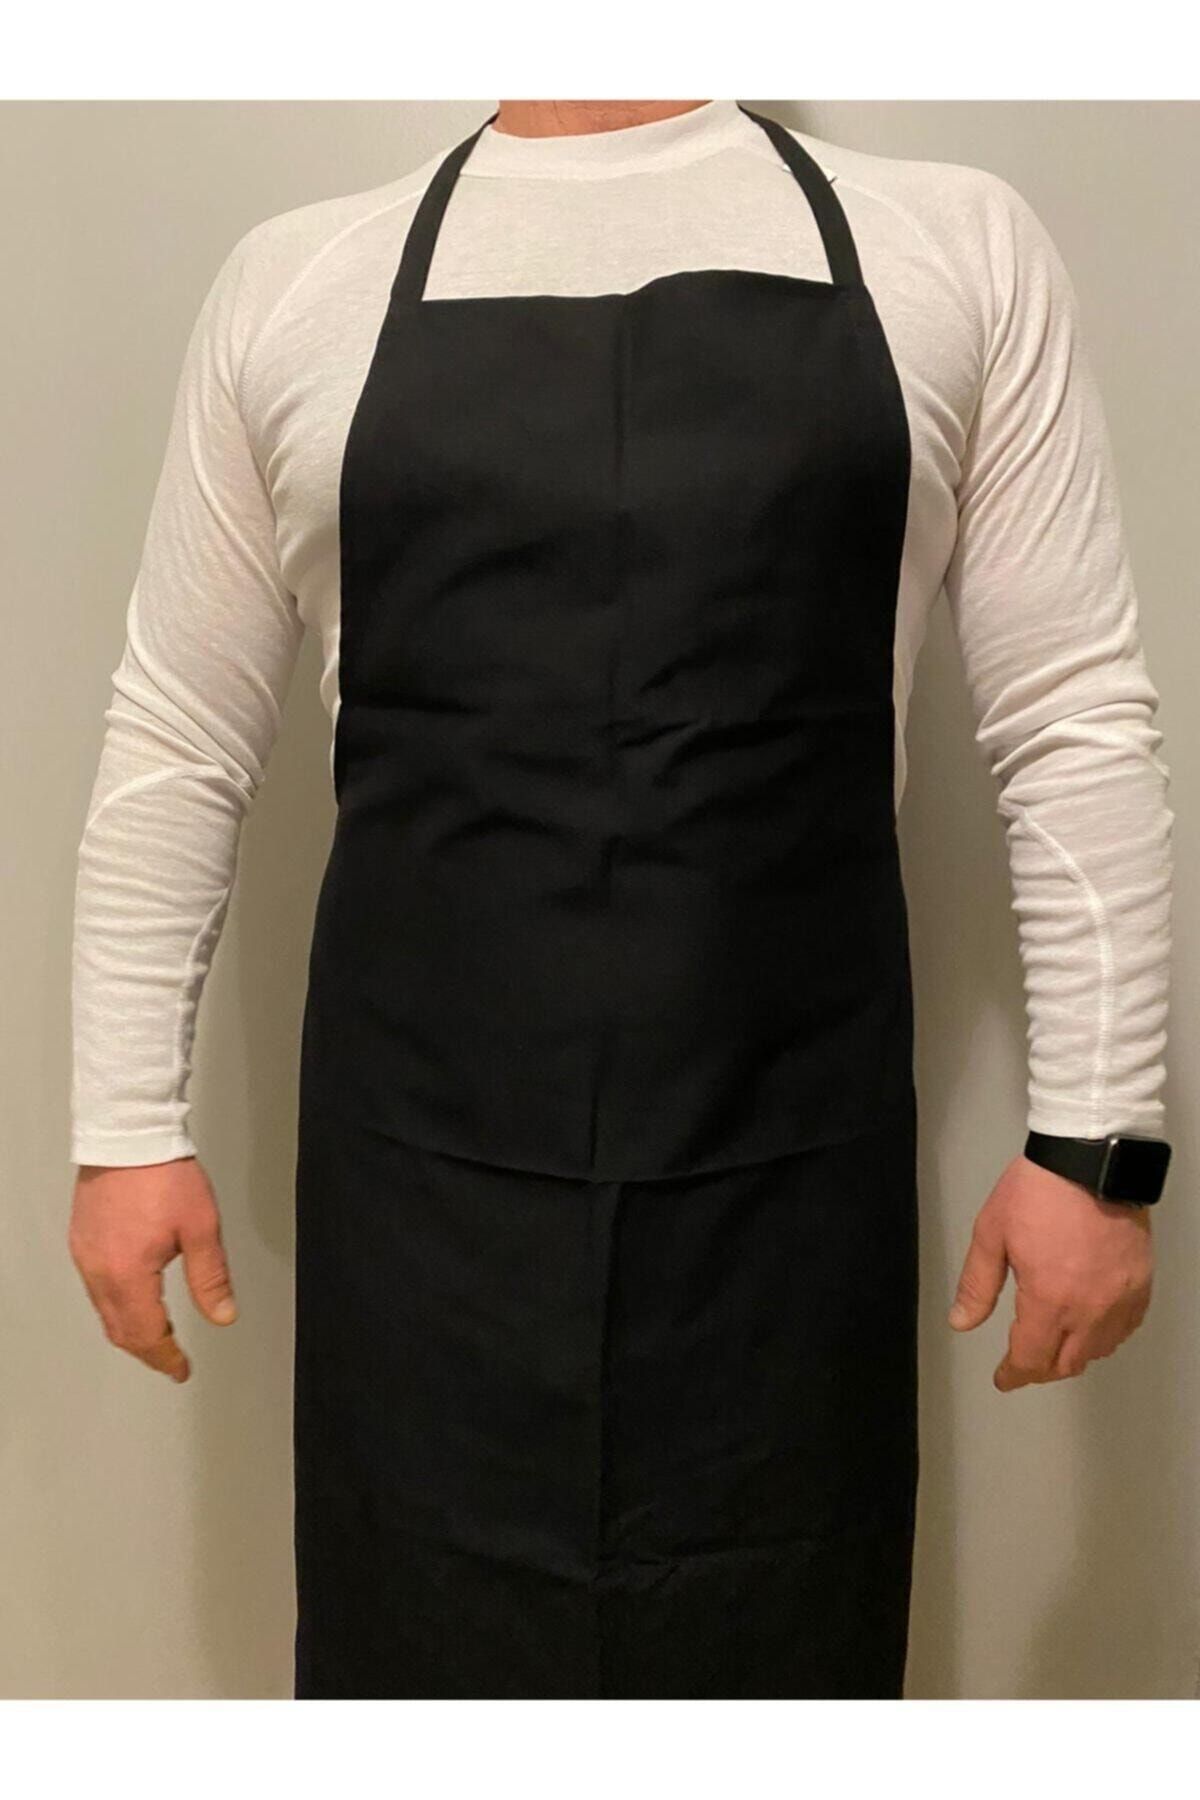 Umut Tekstil Unisex Siyah Mutfak Garson Aşçı Şef Boydan Askılı Servis Önlüğü